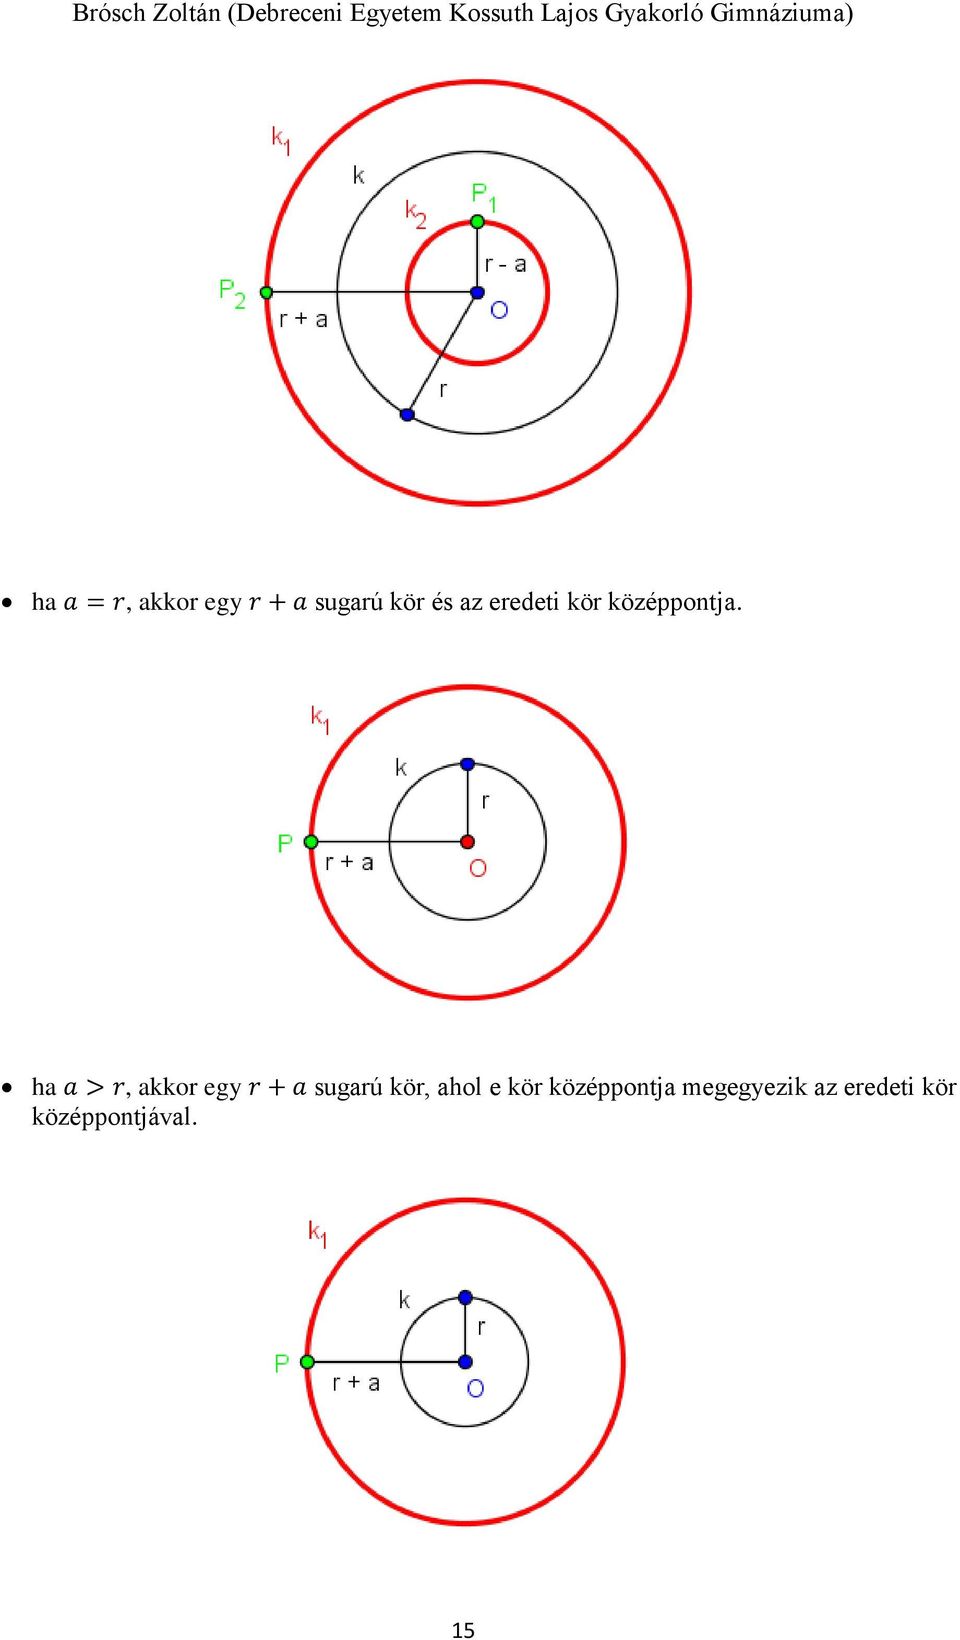 ha a > r, akkor egy r + a sugarú kör, ahol